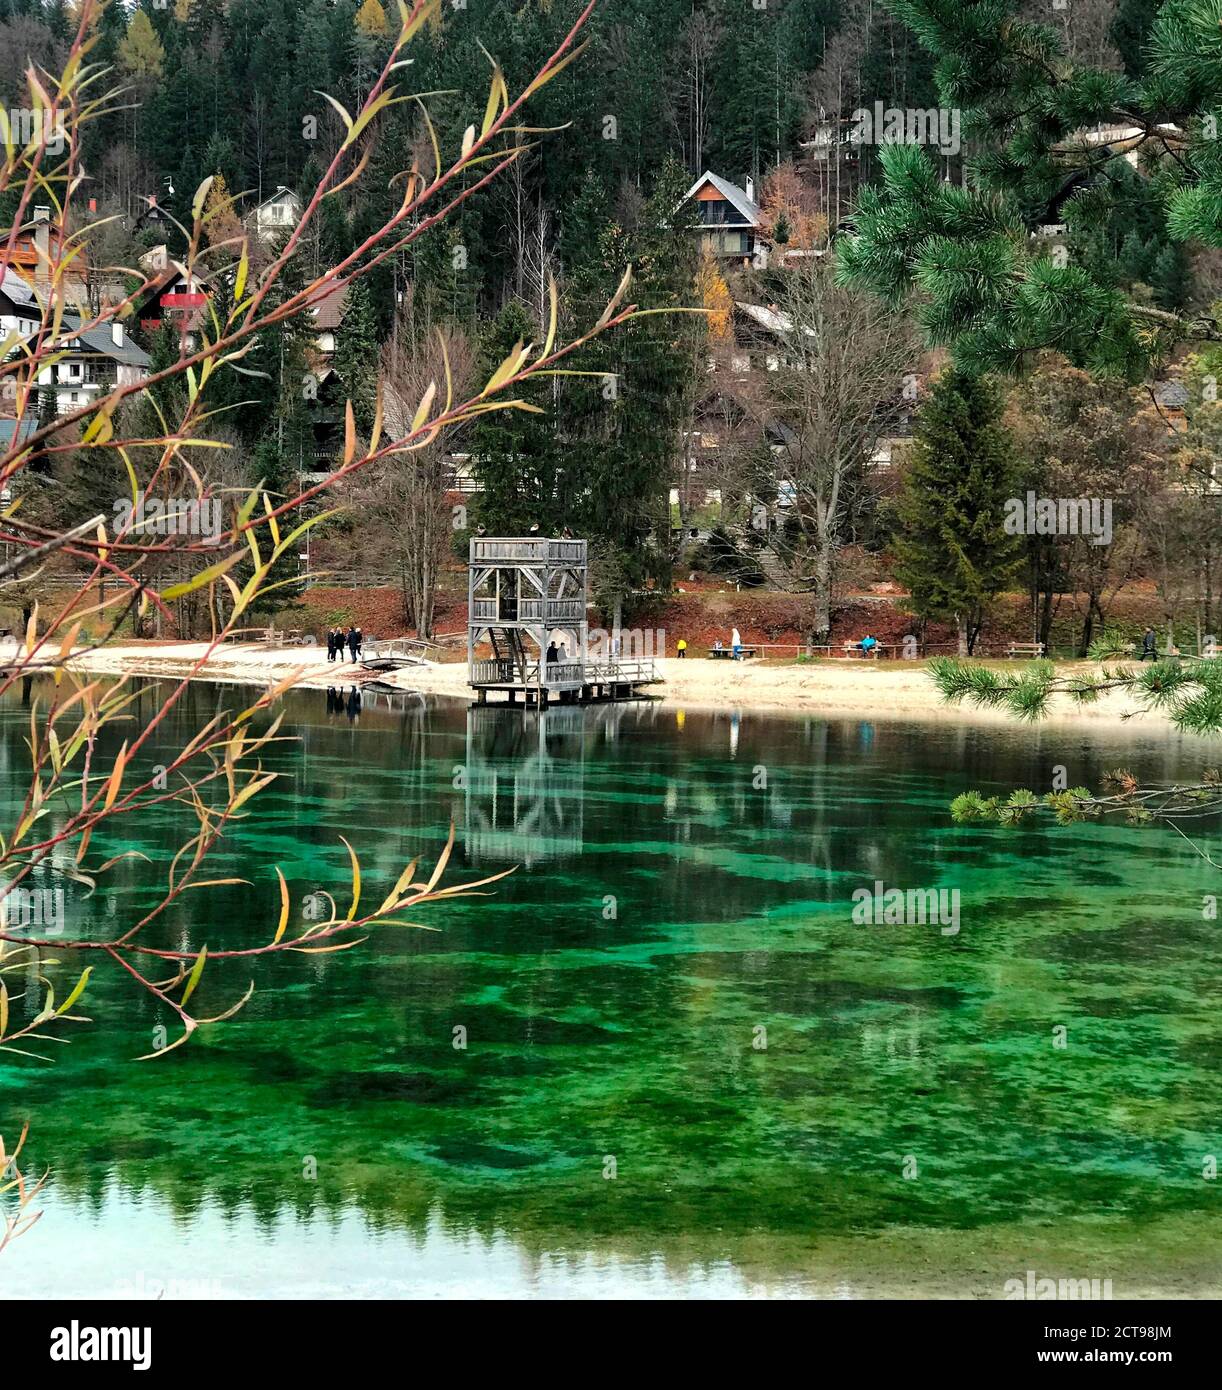 Lac alpin vert Jasna à Kranjska Gora, Slovénie. Détendez-vous au bord du lac. Paysage idyllique d'un lac slovène pittoresque avec de l'eau turquoise cristalline. Banque D'Images